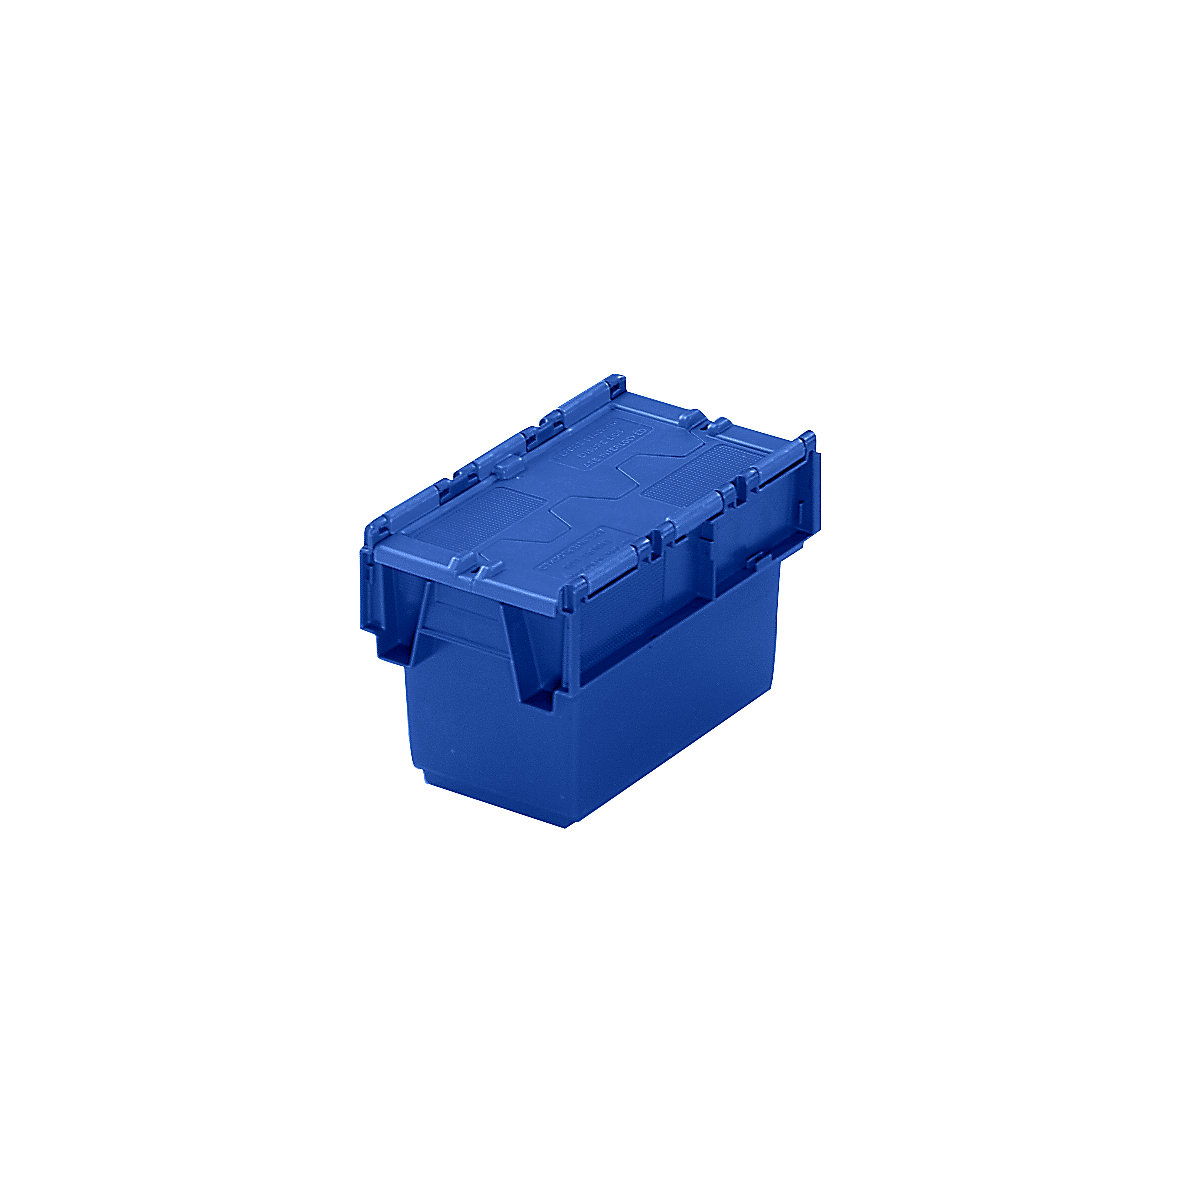 Pojemnik wielokrotnego użytku do ustawiania w stos ze składaną pokrywą, poj. 6 l, dł. x szer. x wys. 300 x 200 x 200 mm, niebieski